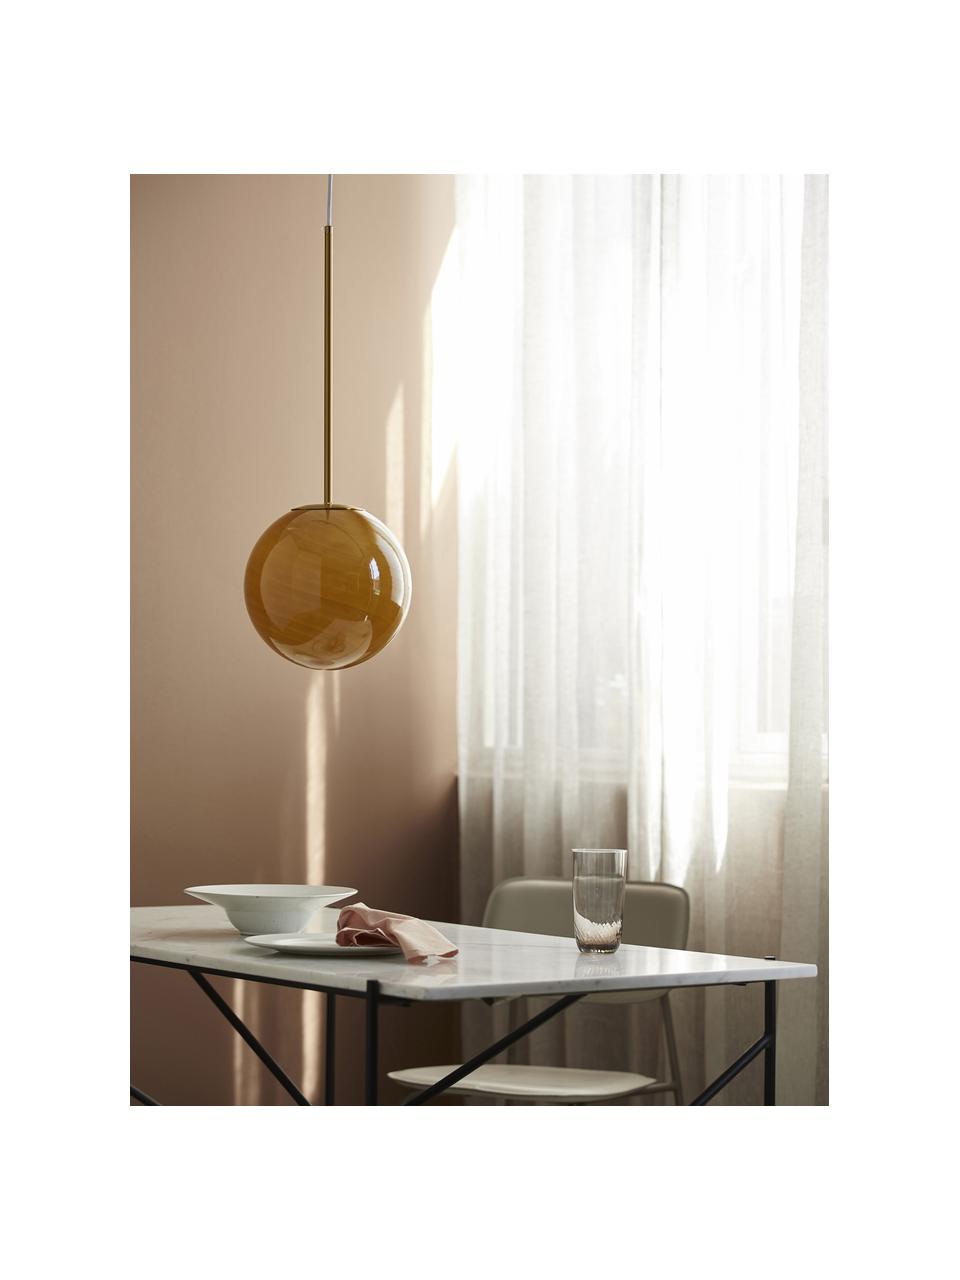 Lampada sferica piccola a sospensione ambrata Seth, Paralume: vetro, Baldacchino: metallo rivestito, Ambra trasparente, dorato, Ø 25 x Alt. 68 cm